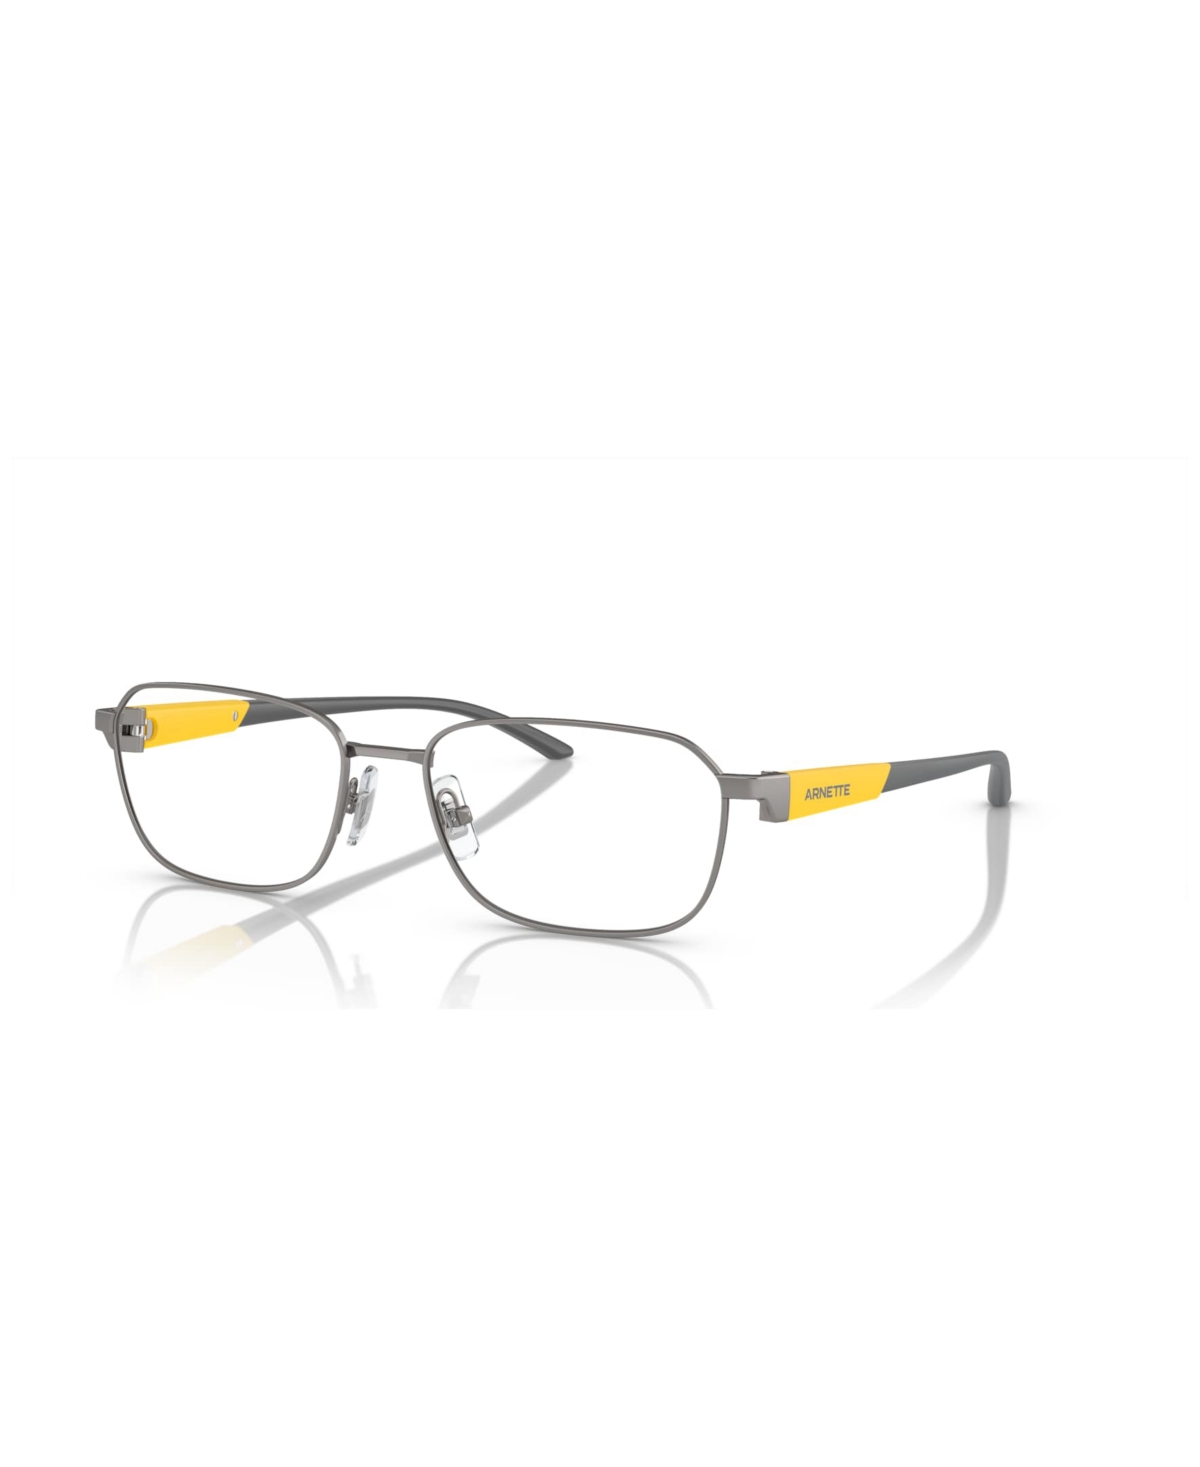 Men's Kijimi Eyeglasses, AN6137 - Matte Gunmetal